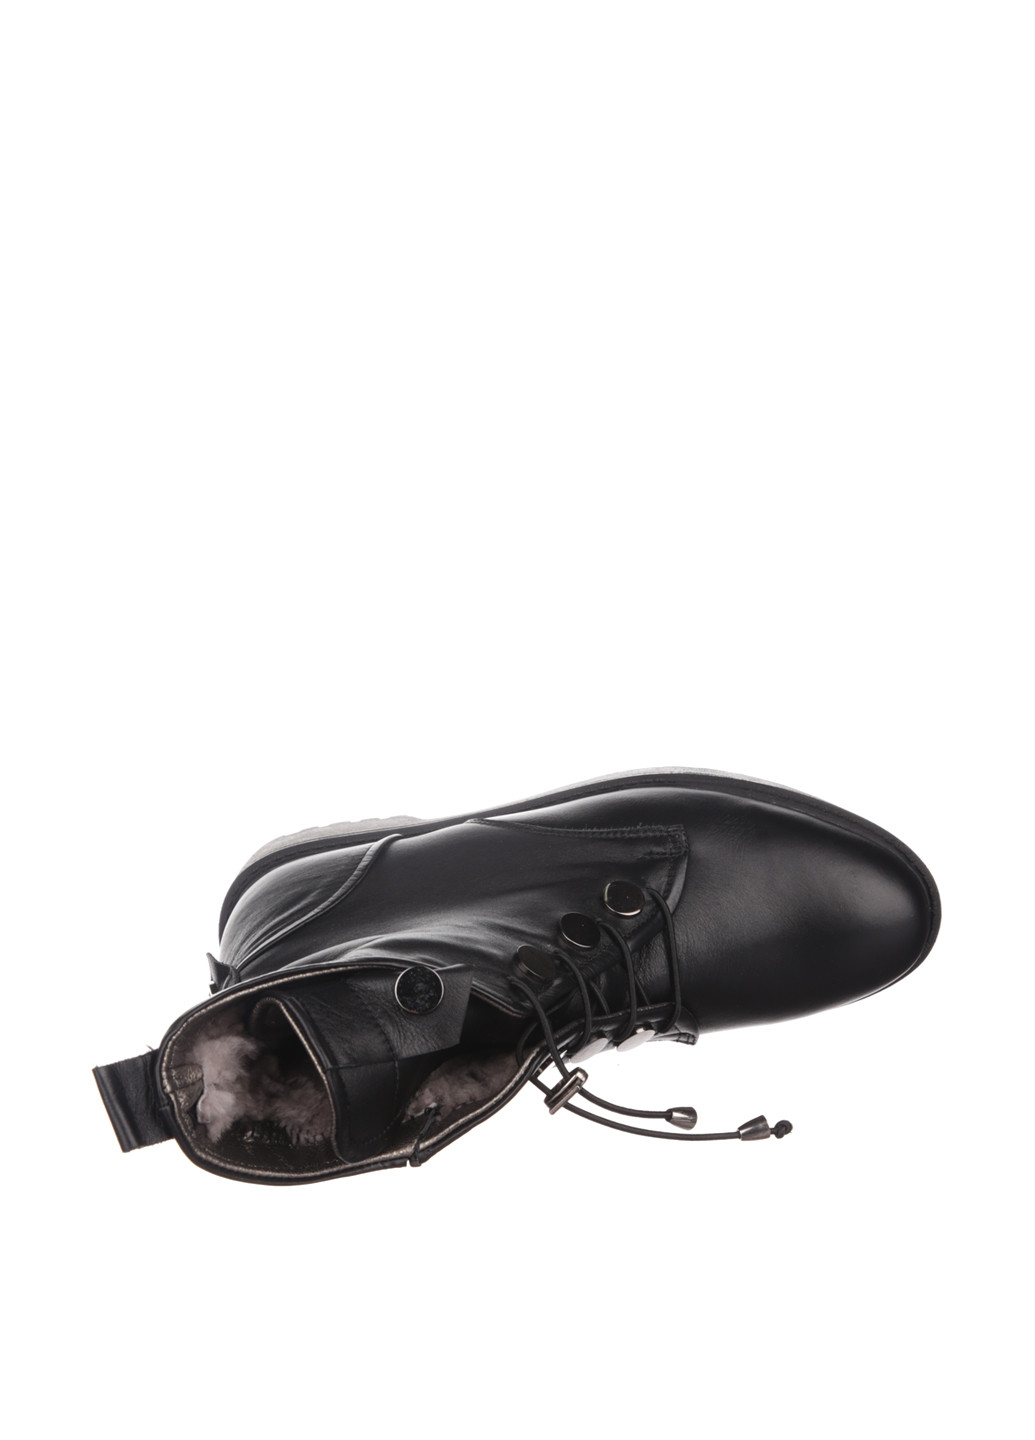 Осенние ботинки Pera Donna со шнуровкой